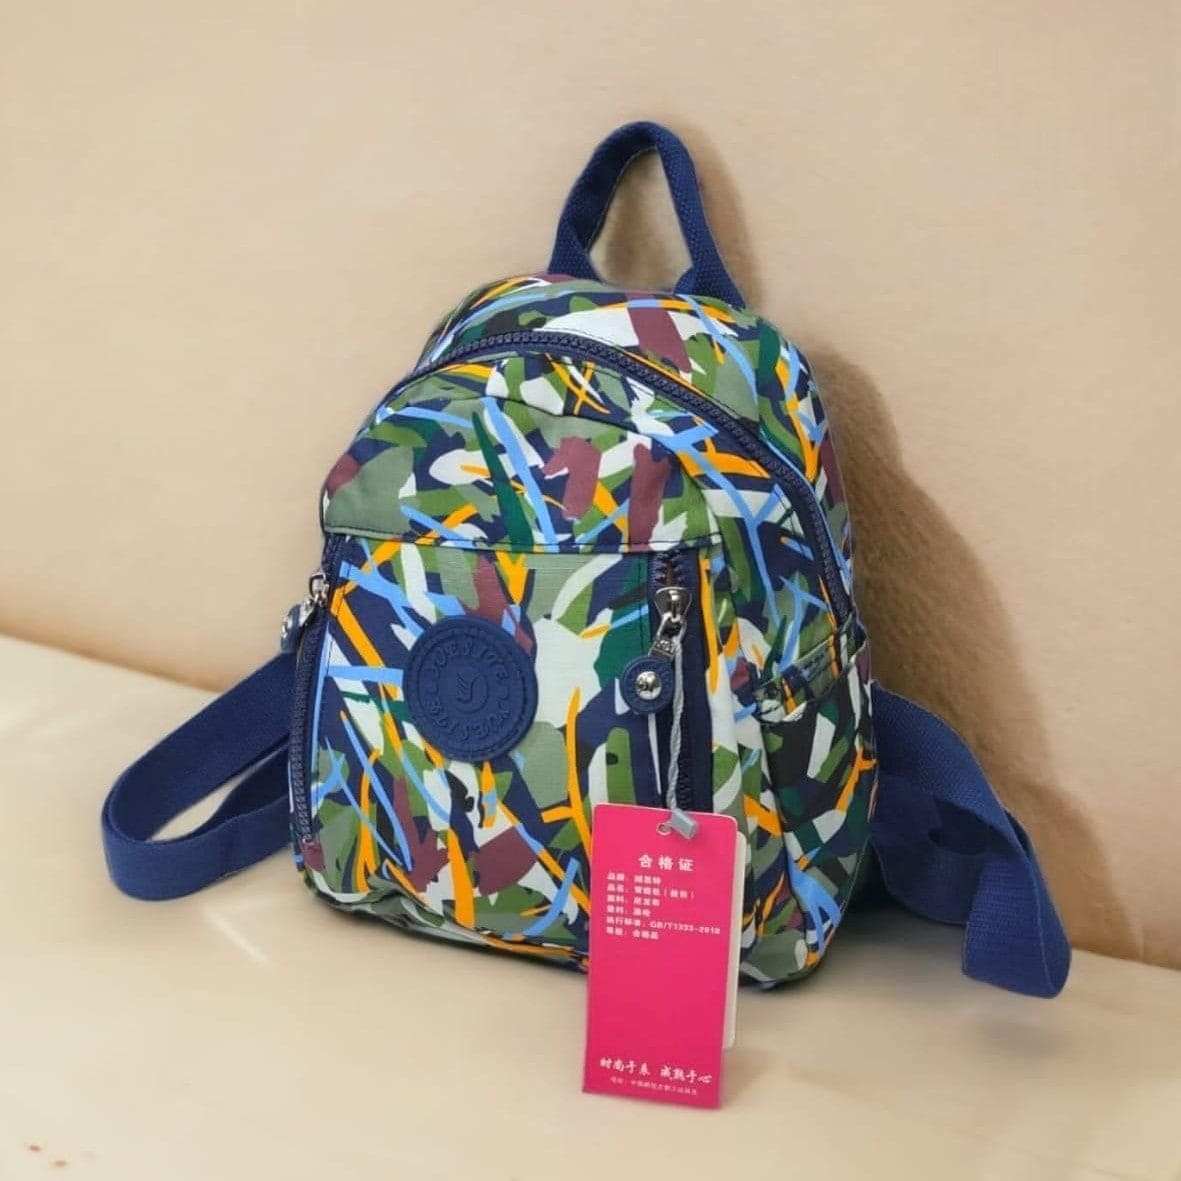 Artistic University Bag Pack, Girls University Shoulder Bag Share Tweet, Large Capacity Outdoor Travel Backpack